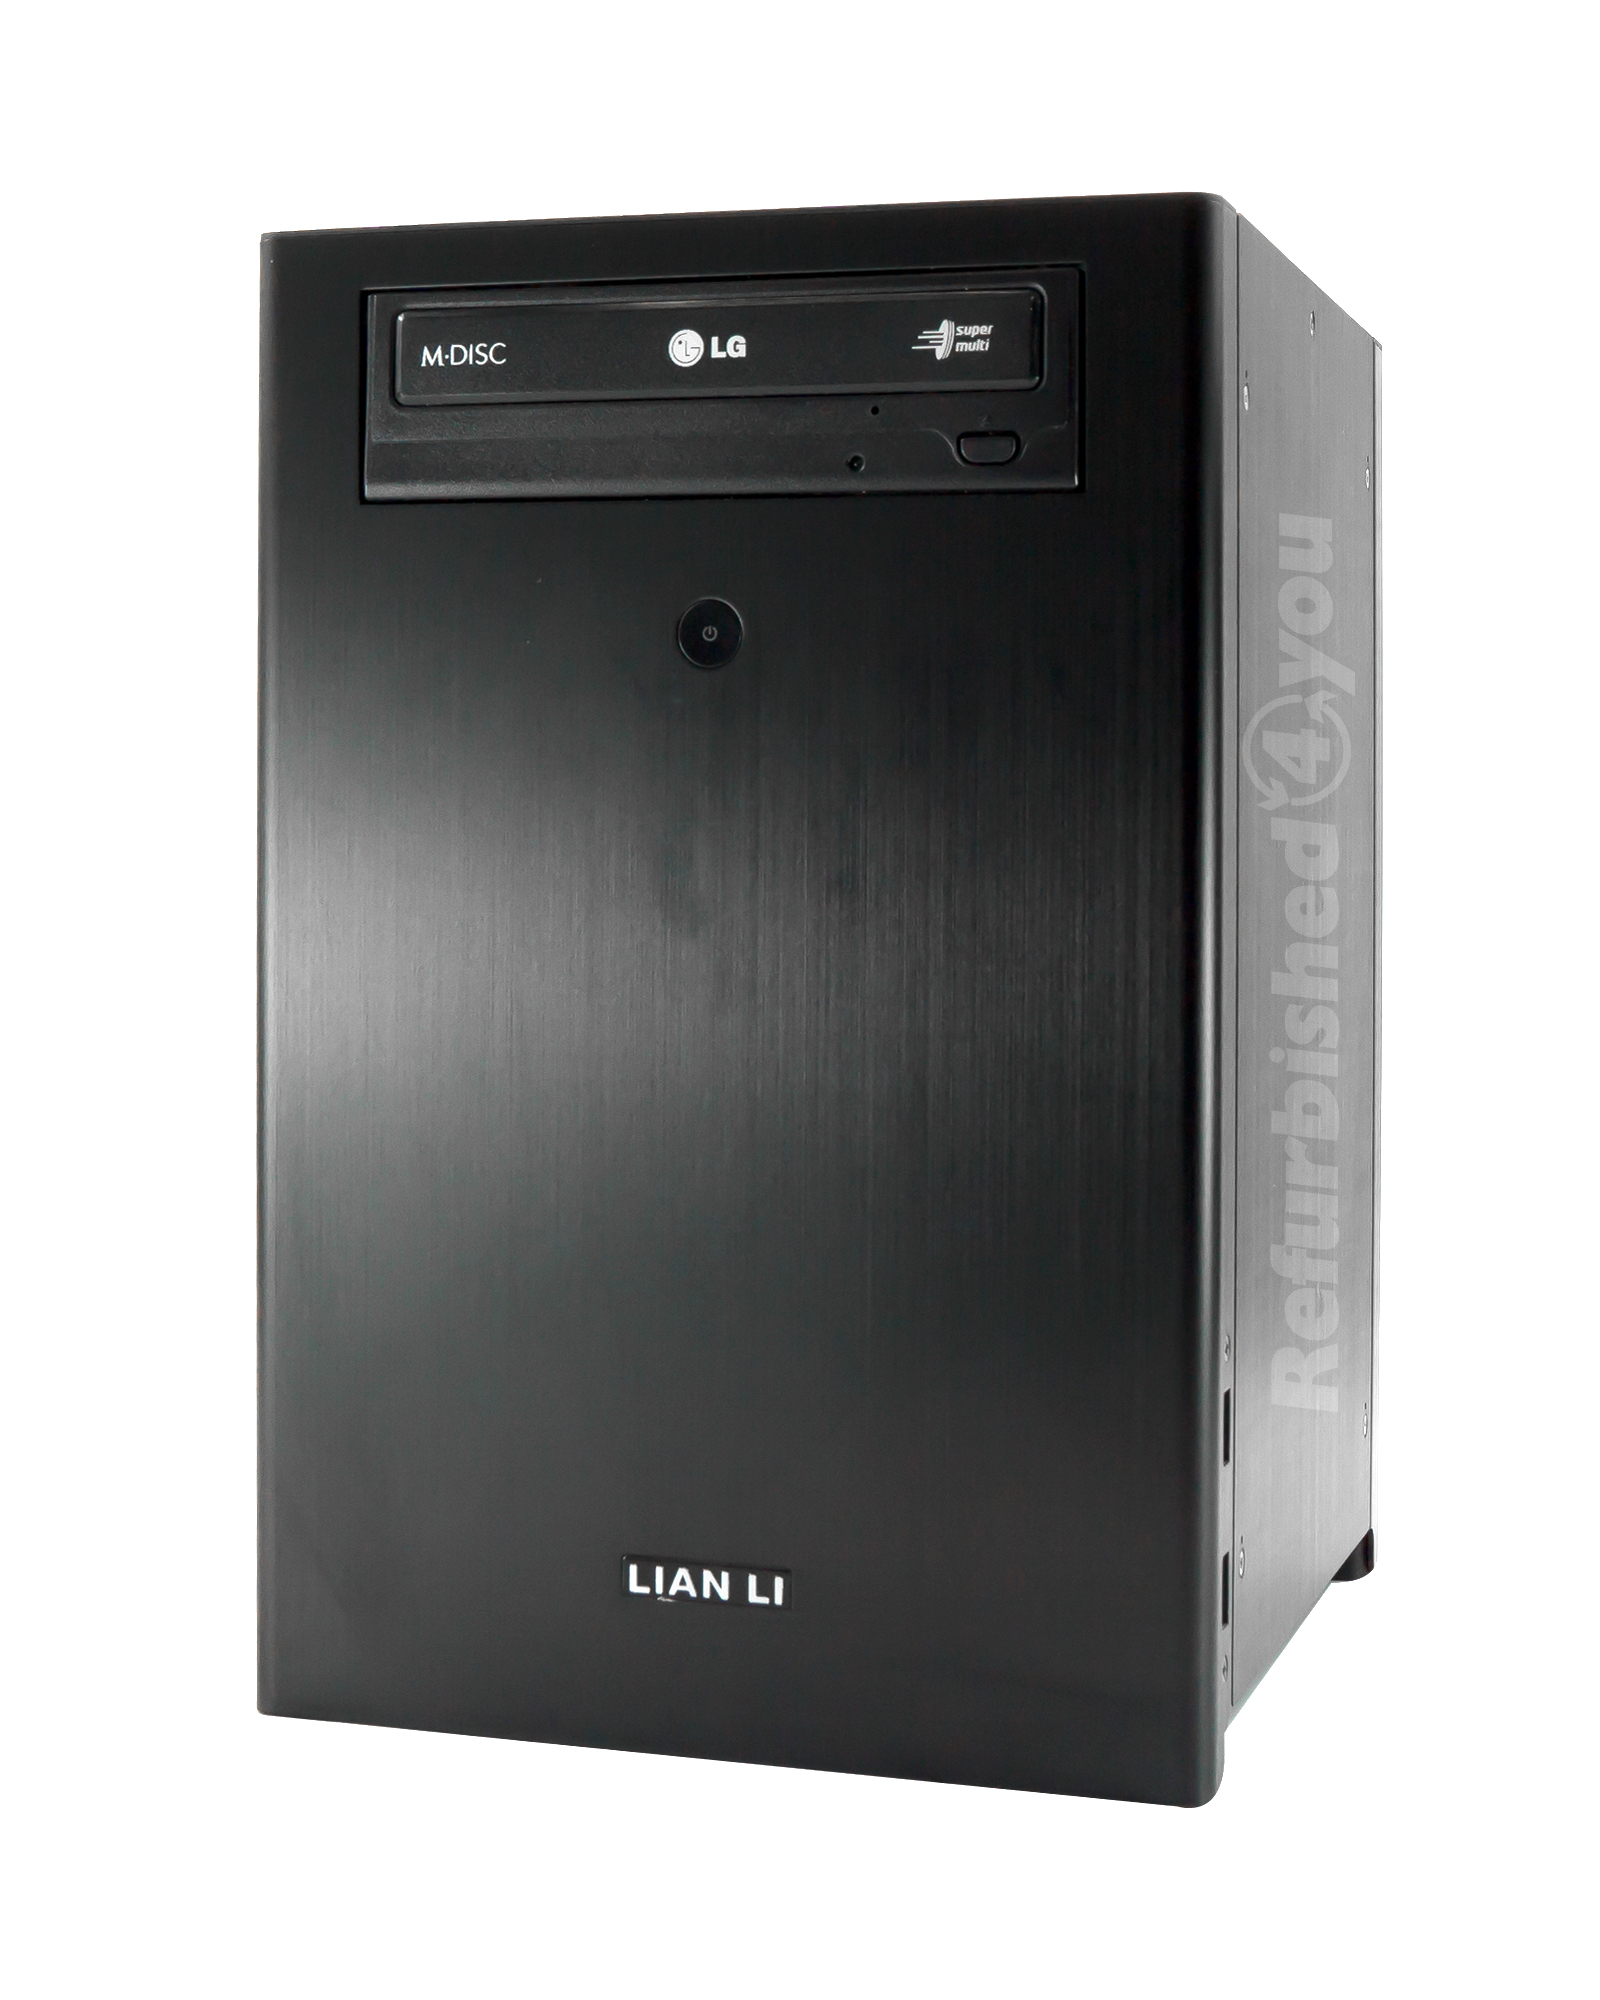 PC- System Lian Li ITX Tower 500W 12cm AMD A4-4000 3Ghz 8GB RAM 128GB SSD + 1TB HDD DVDRW Radeon HD 7480D WLAN BT Win10Pro